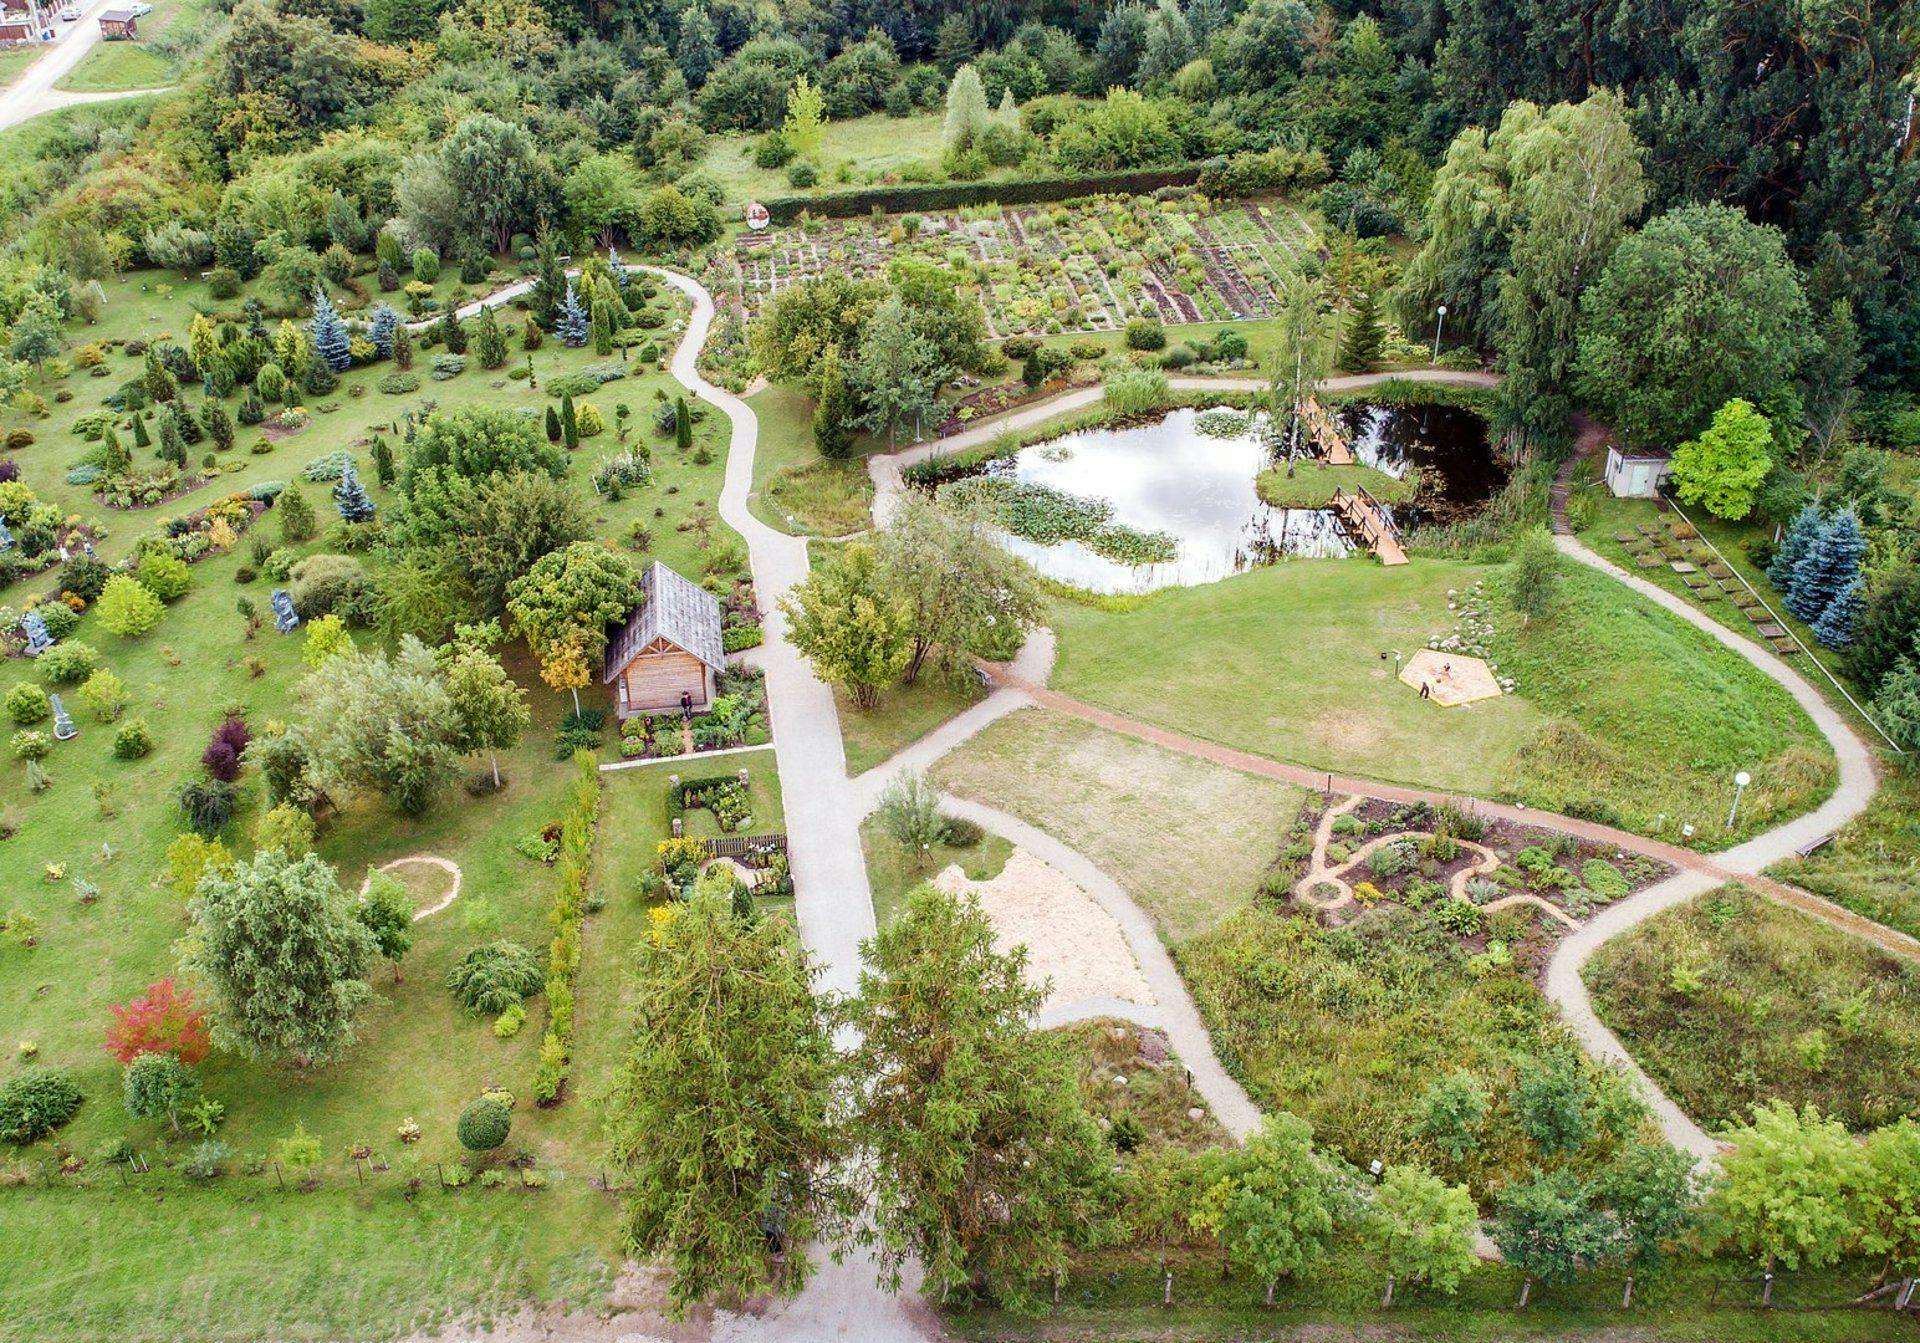 Šiaulių universiteto botanikos sodas